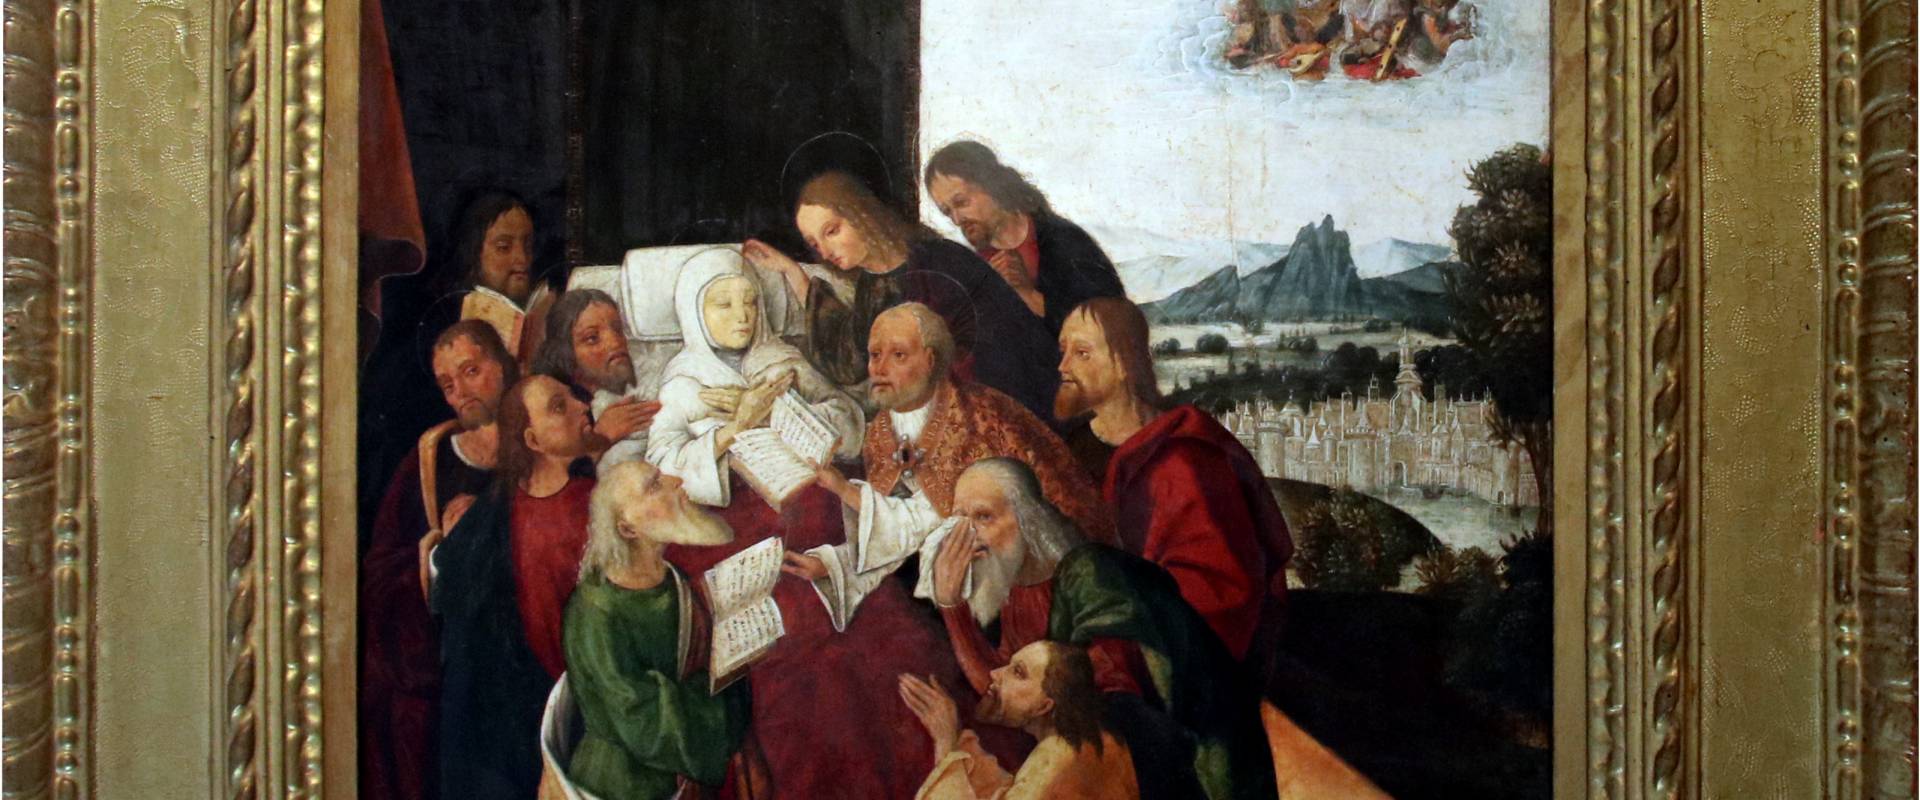 Michele Coltellini, Morte della Madonna, 1502 foto di Mongolo1984